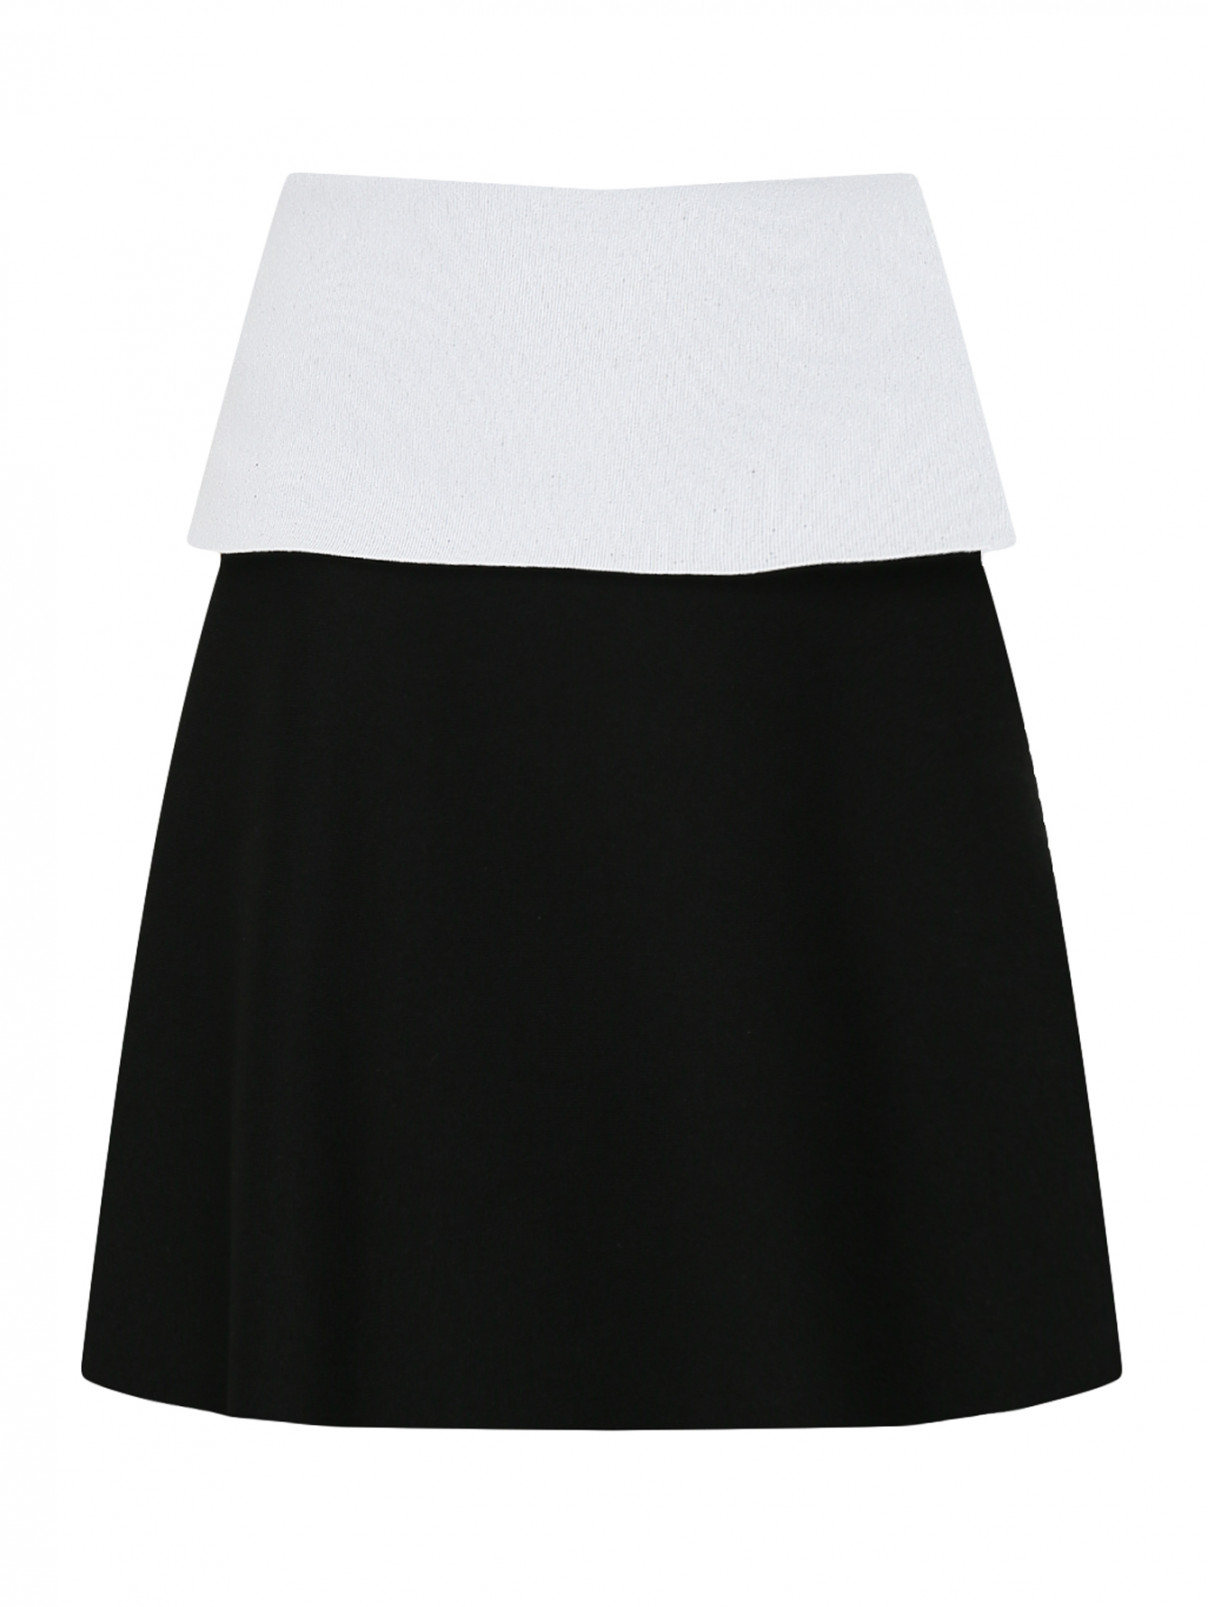 Трикотажная юбка с контрастной баской и молнией Proenza Schouler  –  Общий вид  – Цвет:  Черный